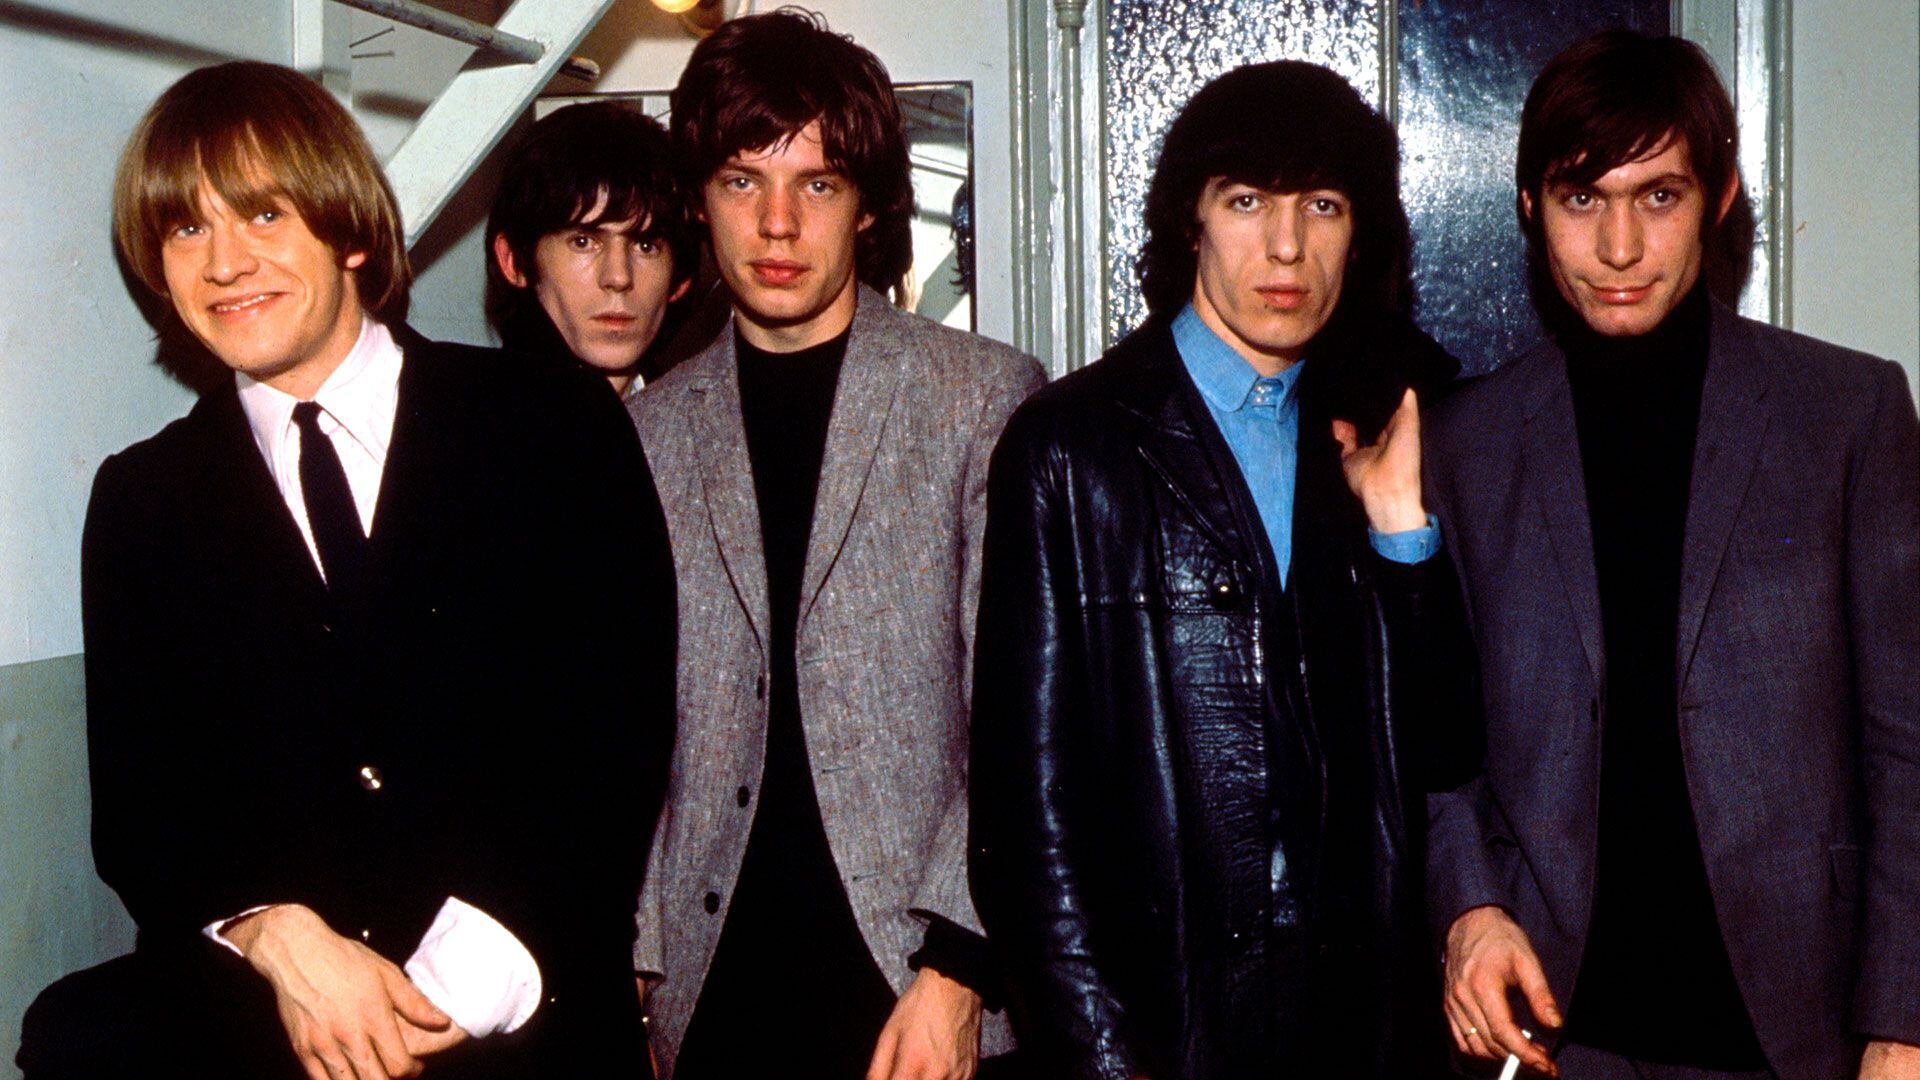 Los Rolling Stones de la década del '60. Watts tocaba con bandas de jazz cuando Jagger y Richards lo conocieron y le pidieron que se uniera a la banda. Al principio se negó (Photo by King Collection/Avalon/Getty Images)